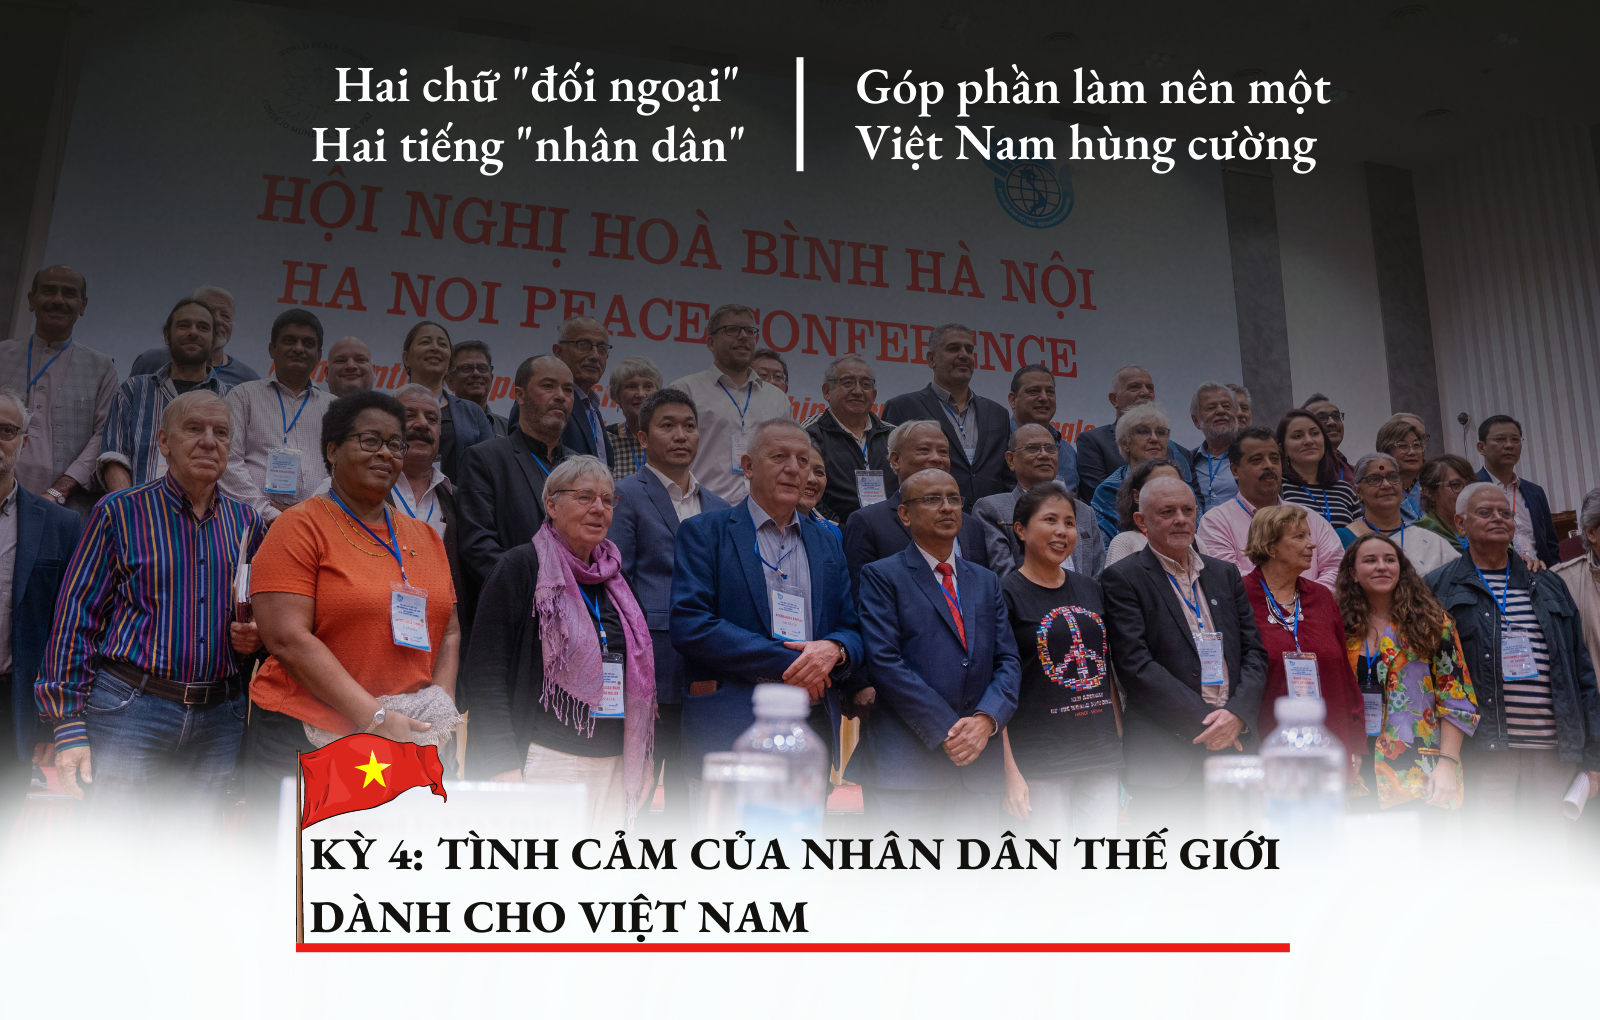 [INFOGRAPHIC] Kỳ 4: Tình cảm của bạn bè quốc tế dành cho Việt Nam